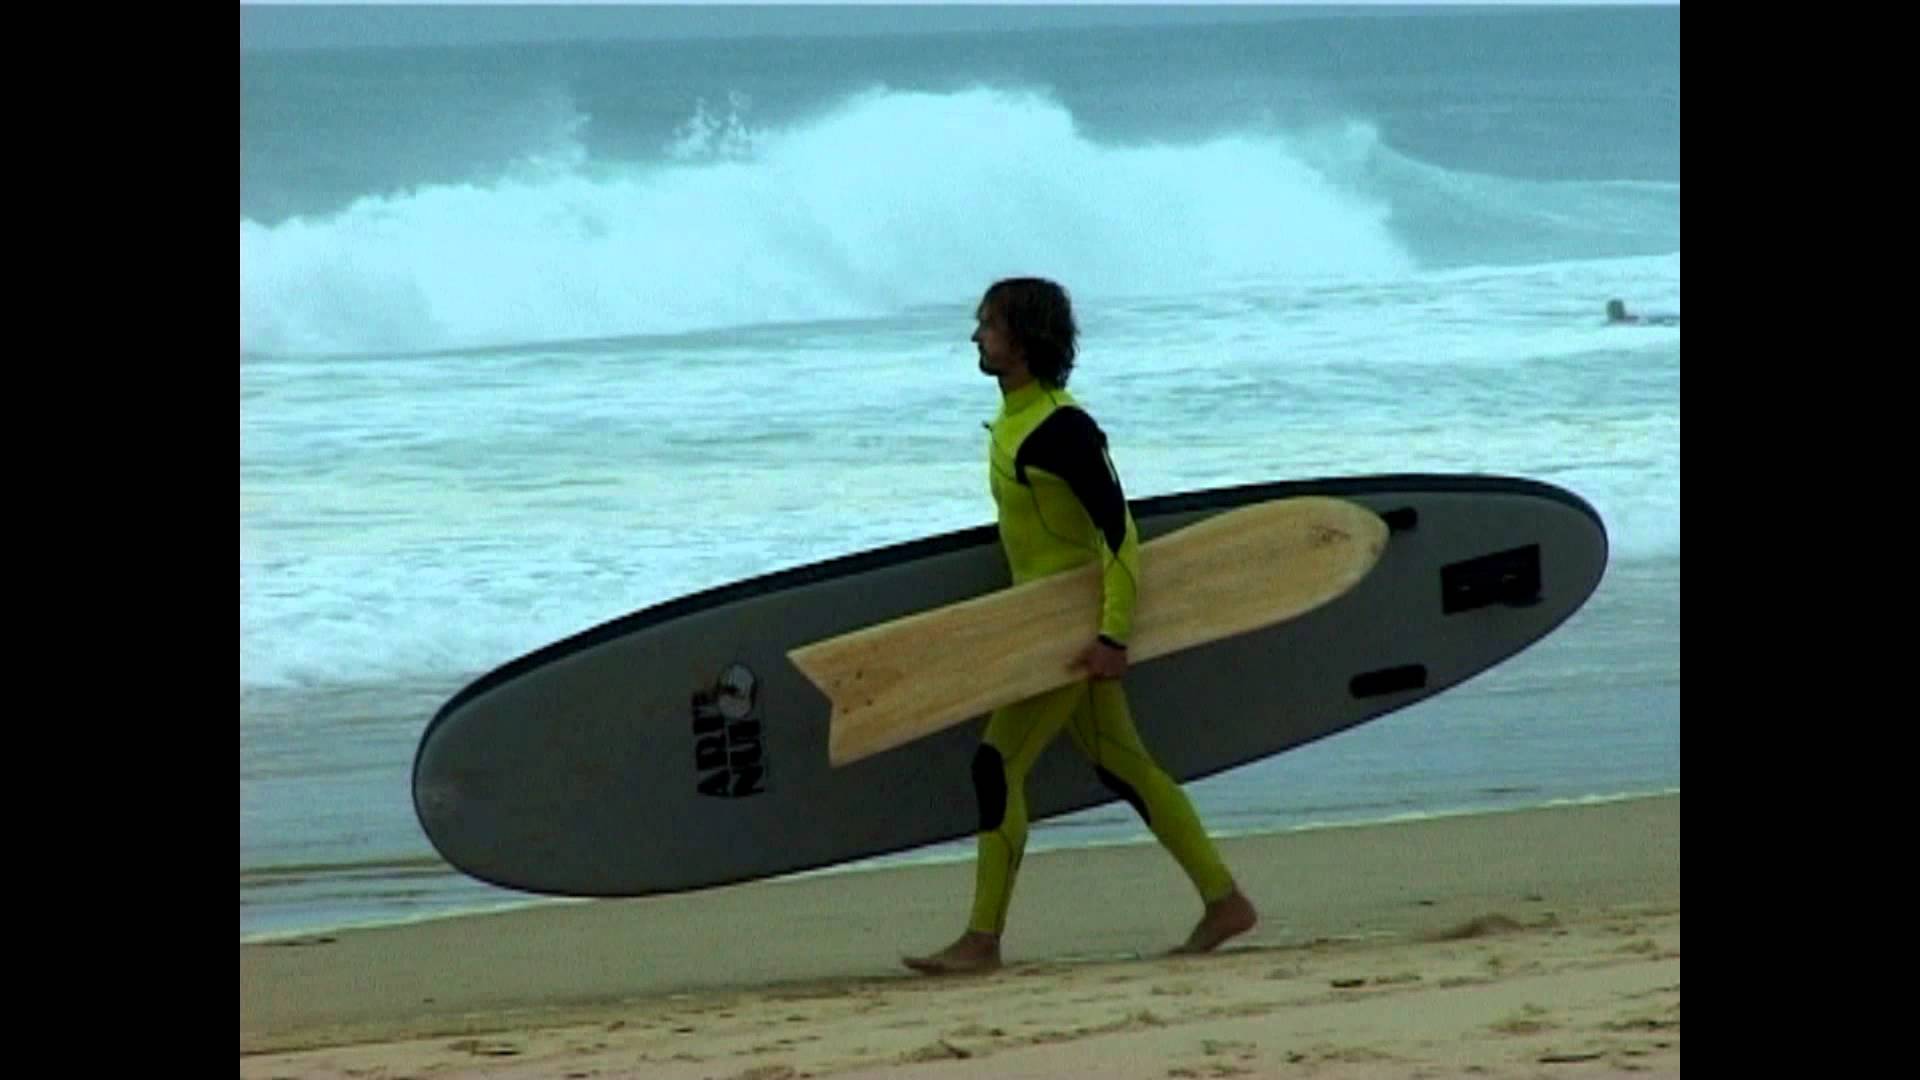 Ce gars a trouvé une une idée révolutionnaire pour surfer